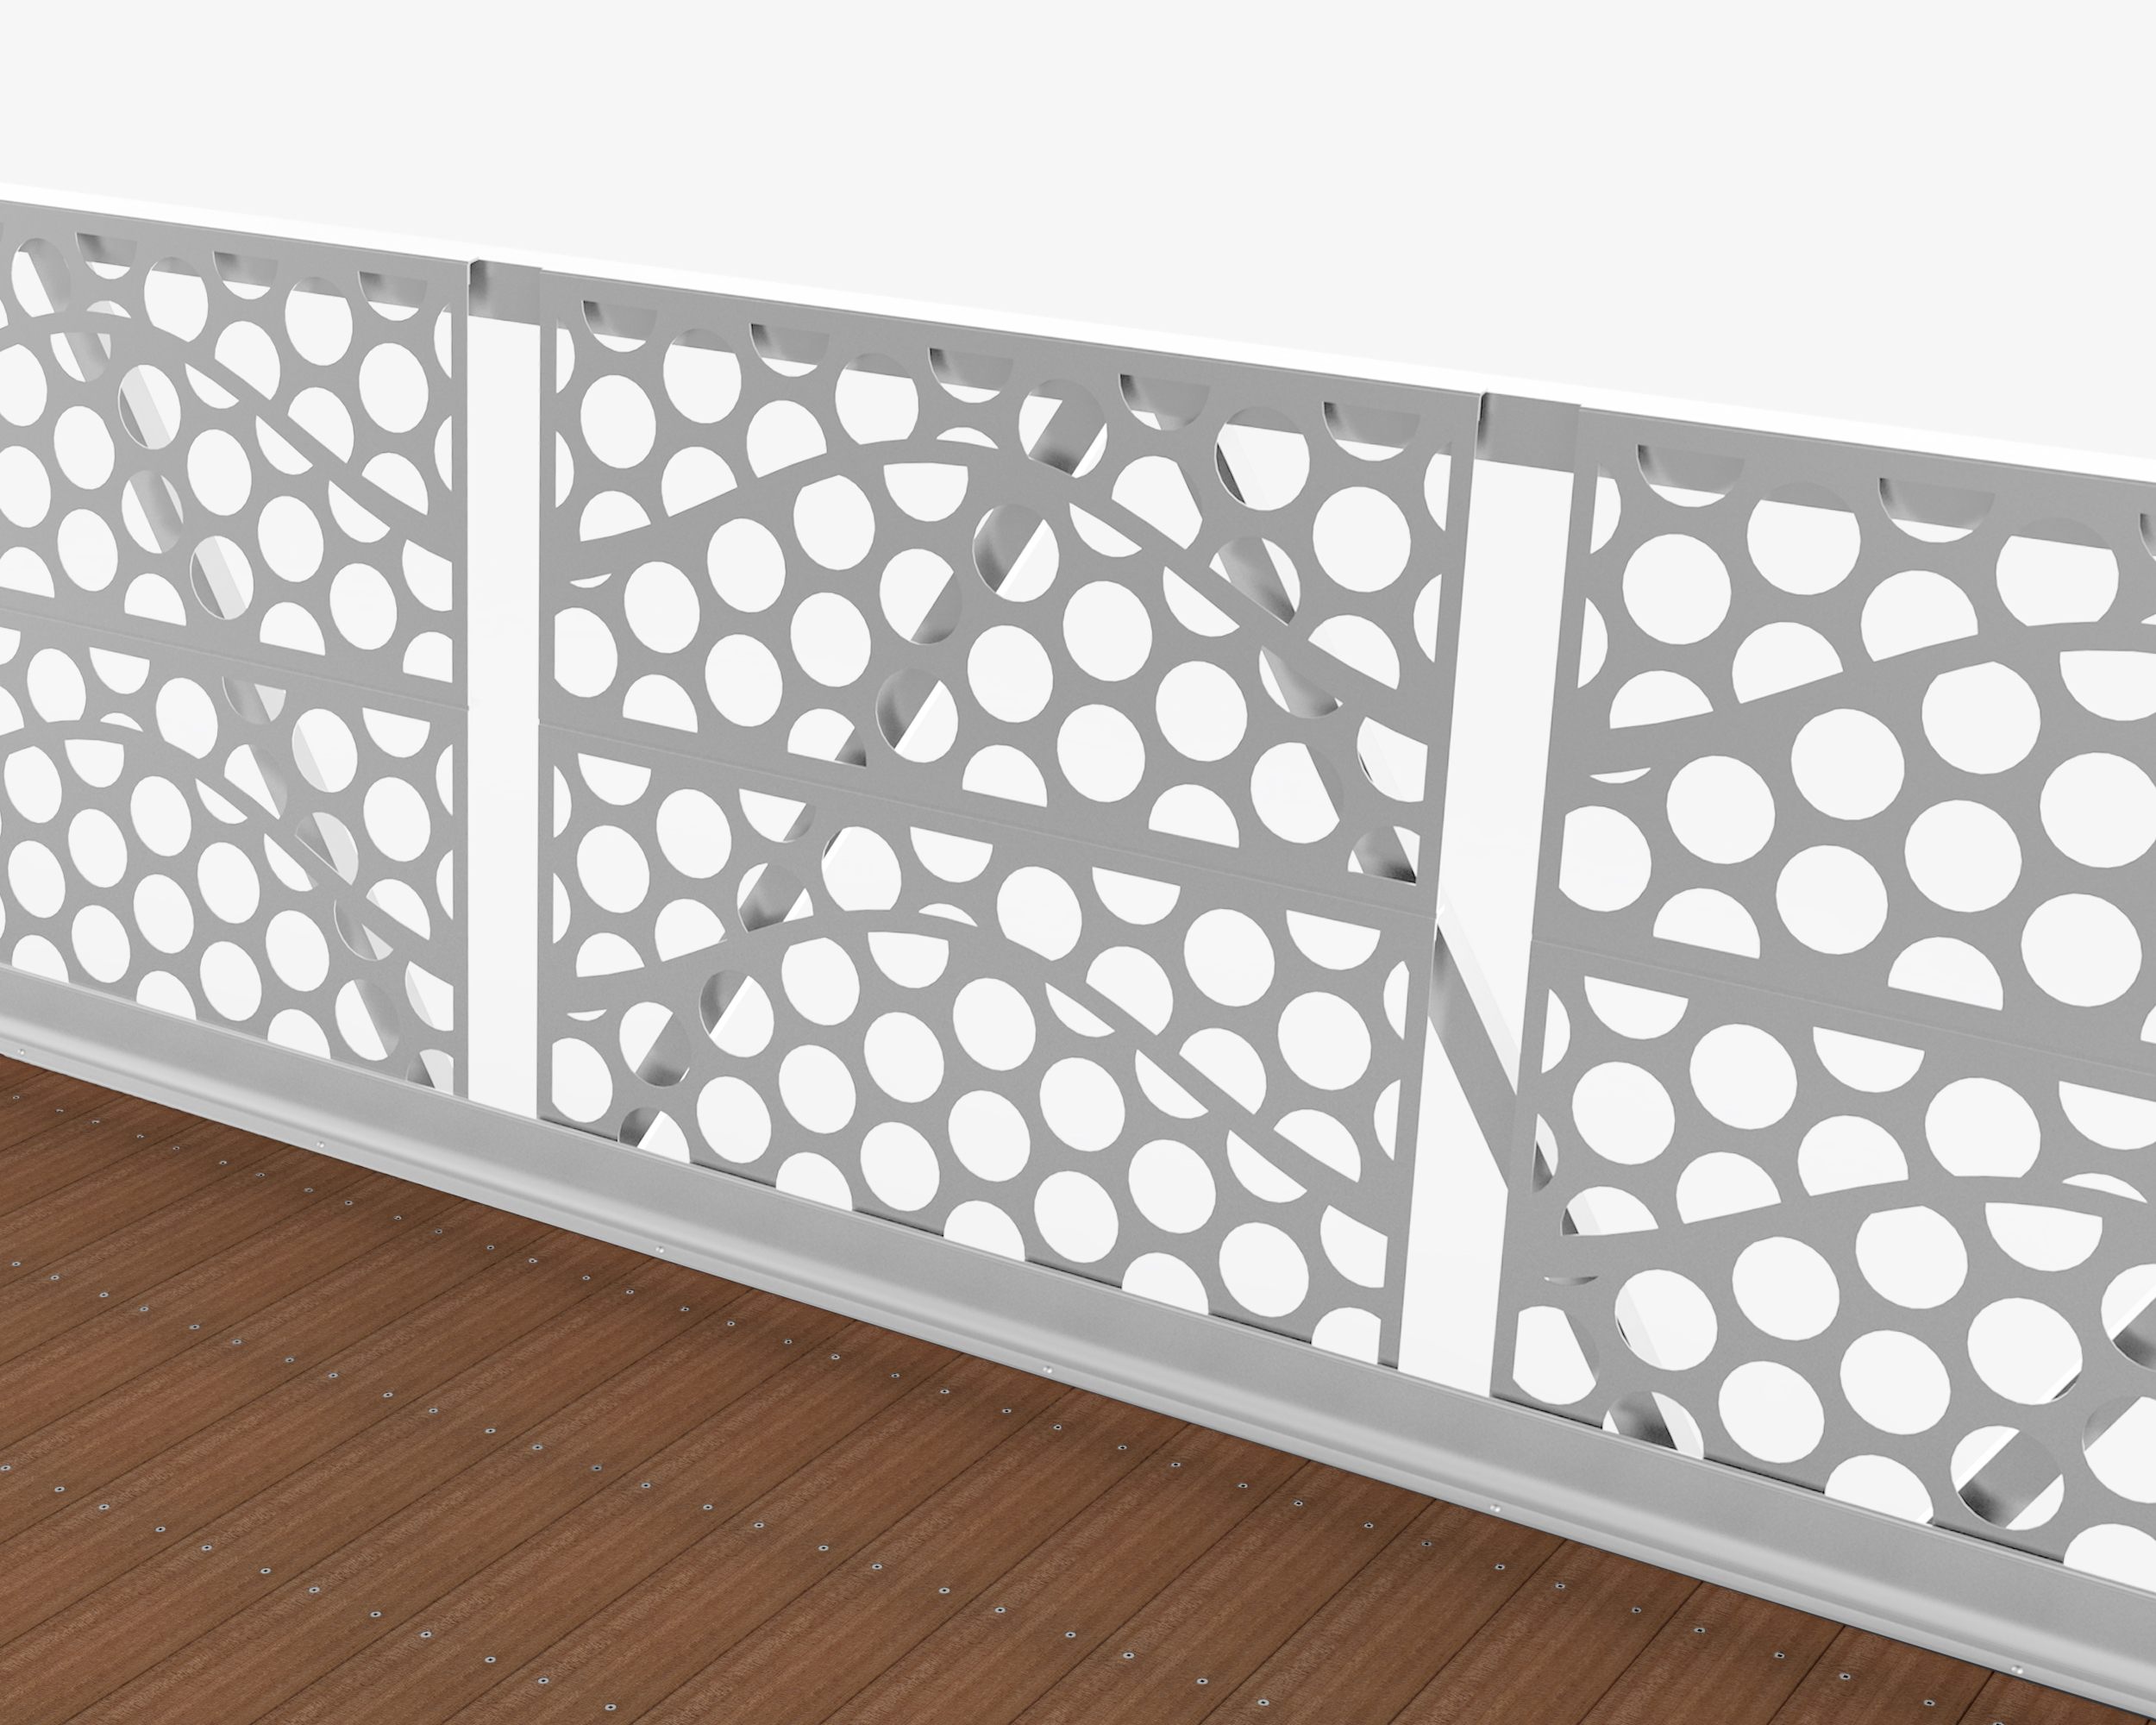 Aluminum guardrail with custom design on custom pedestrian bridge